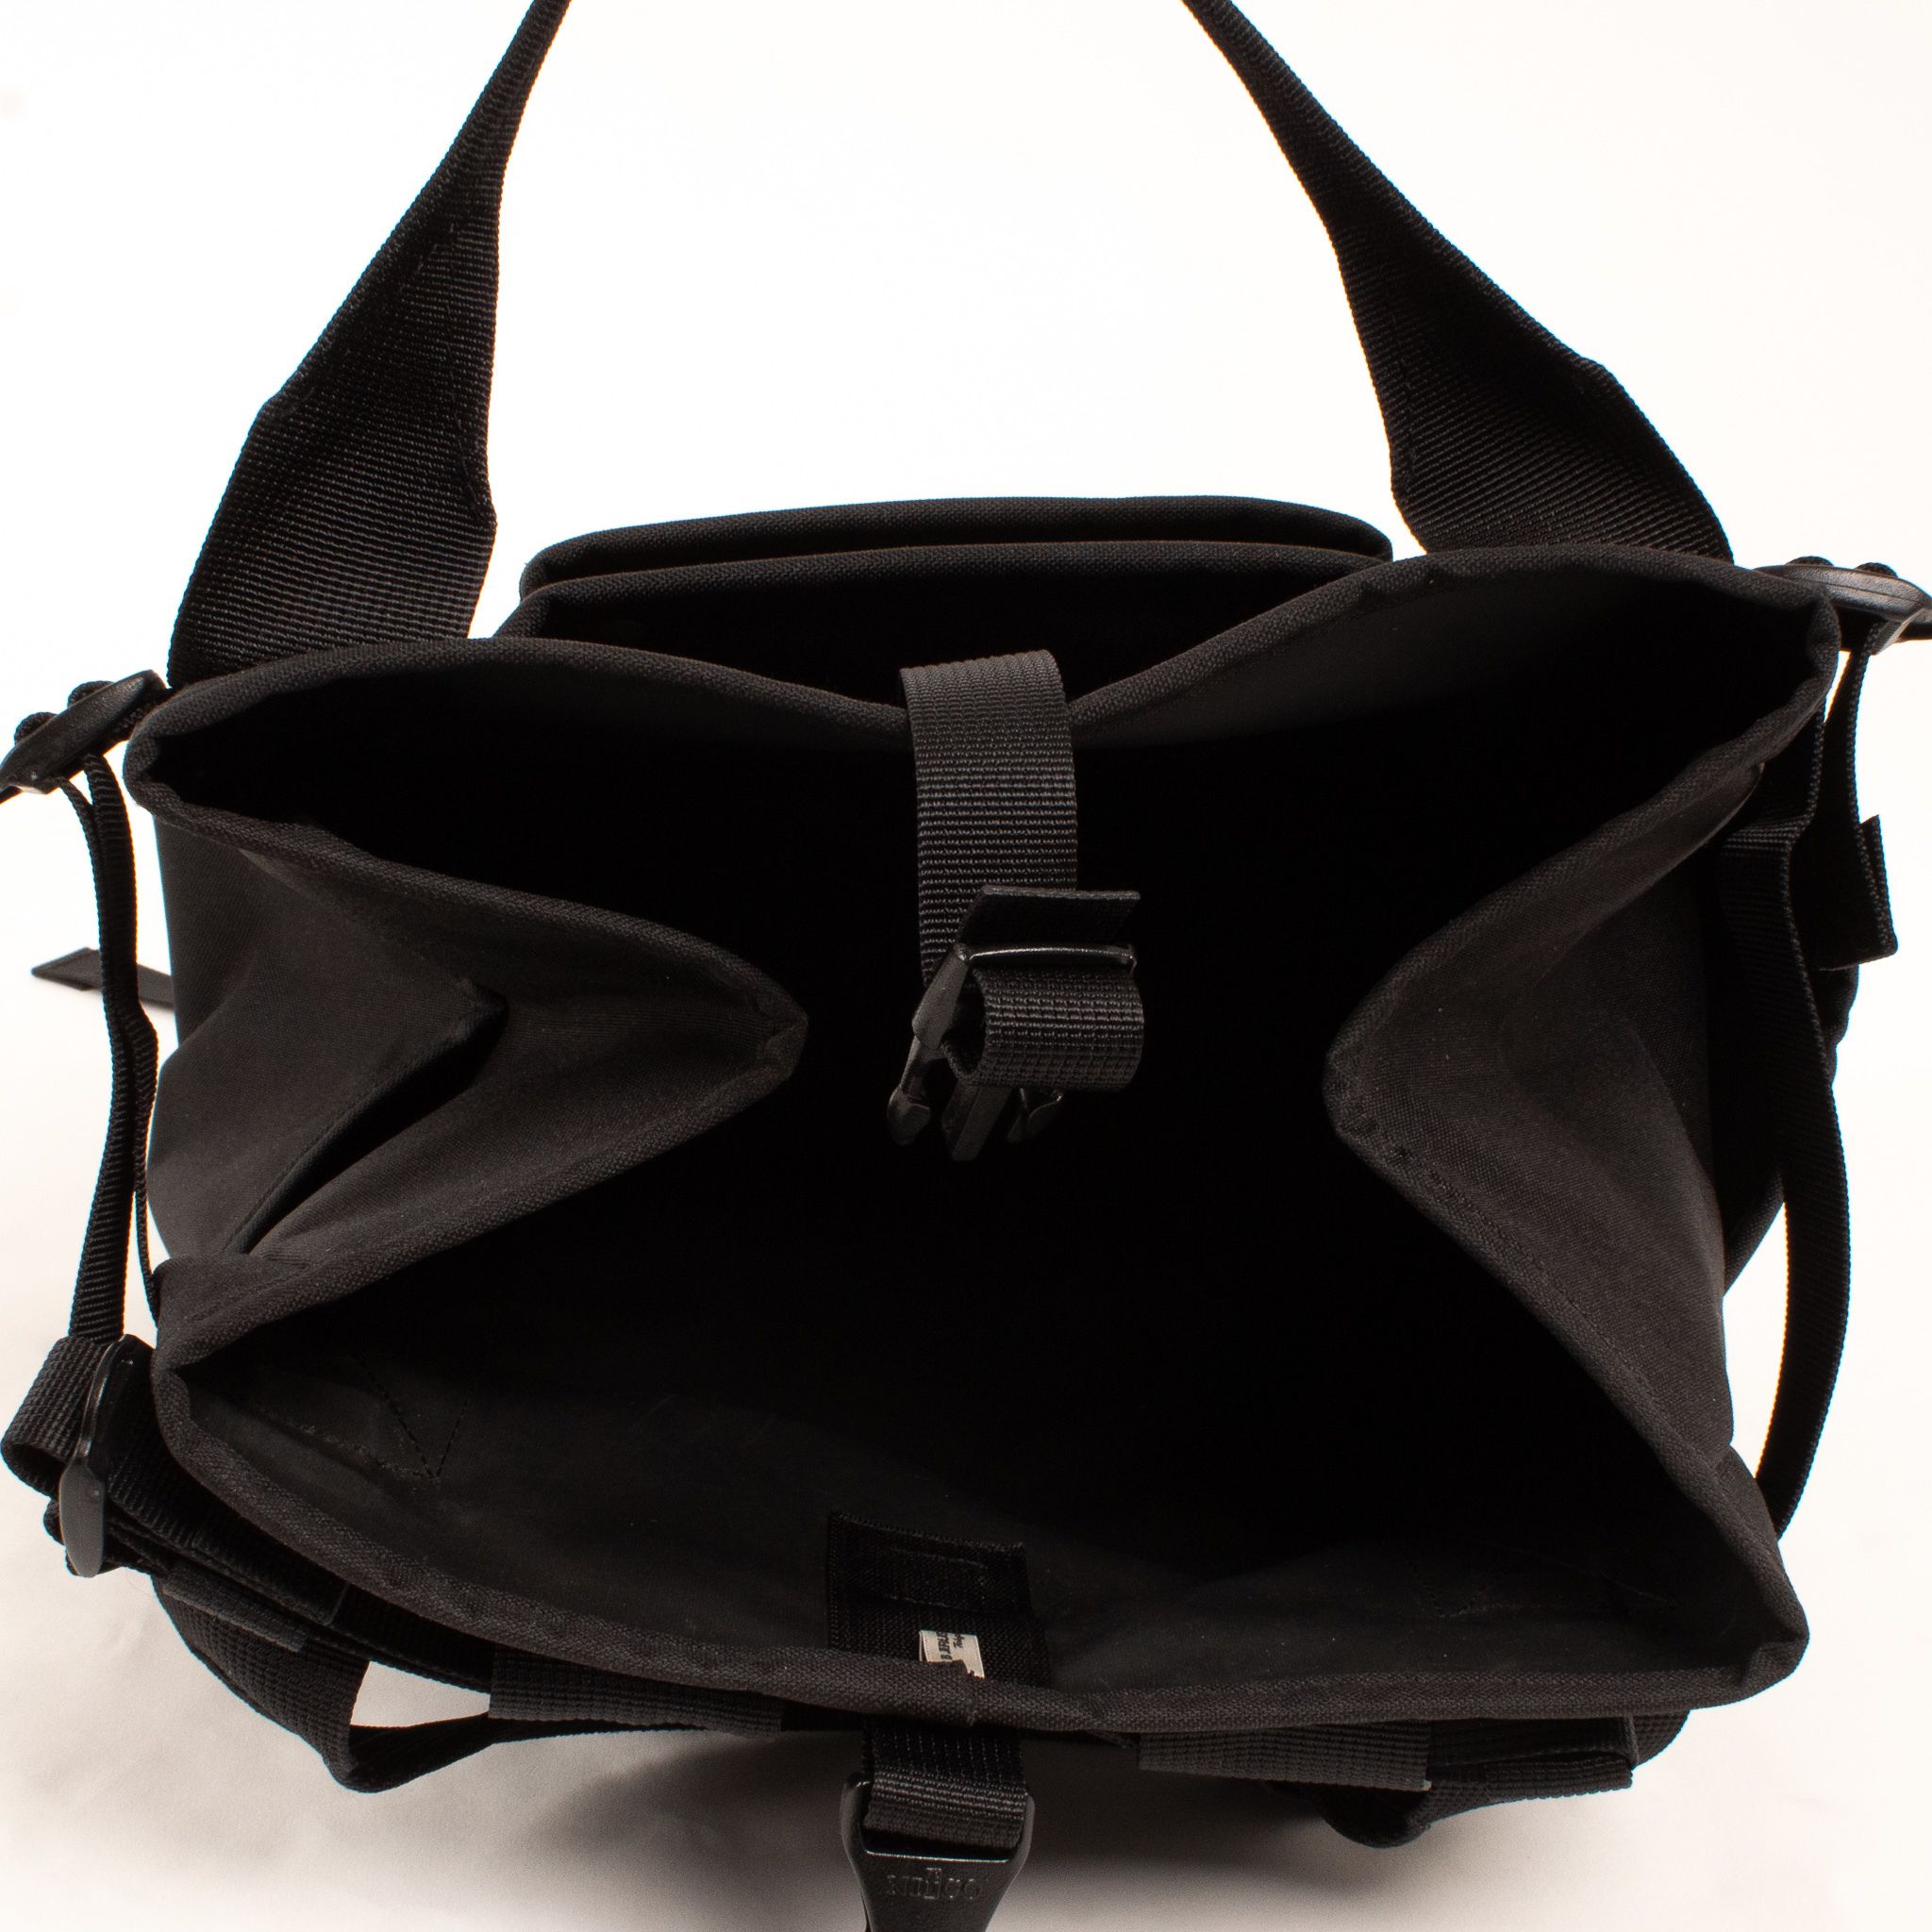 Porter-Yoshida & Co. x Beams Backpack by Frederick Guerrero 